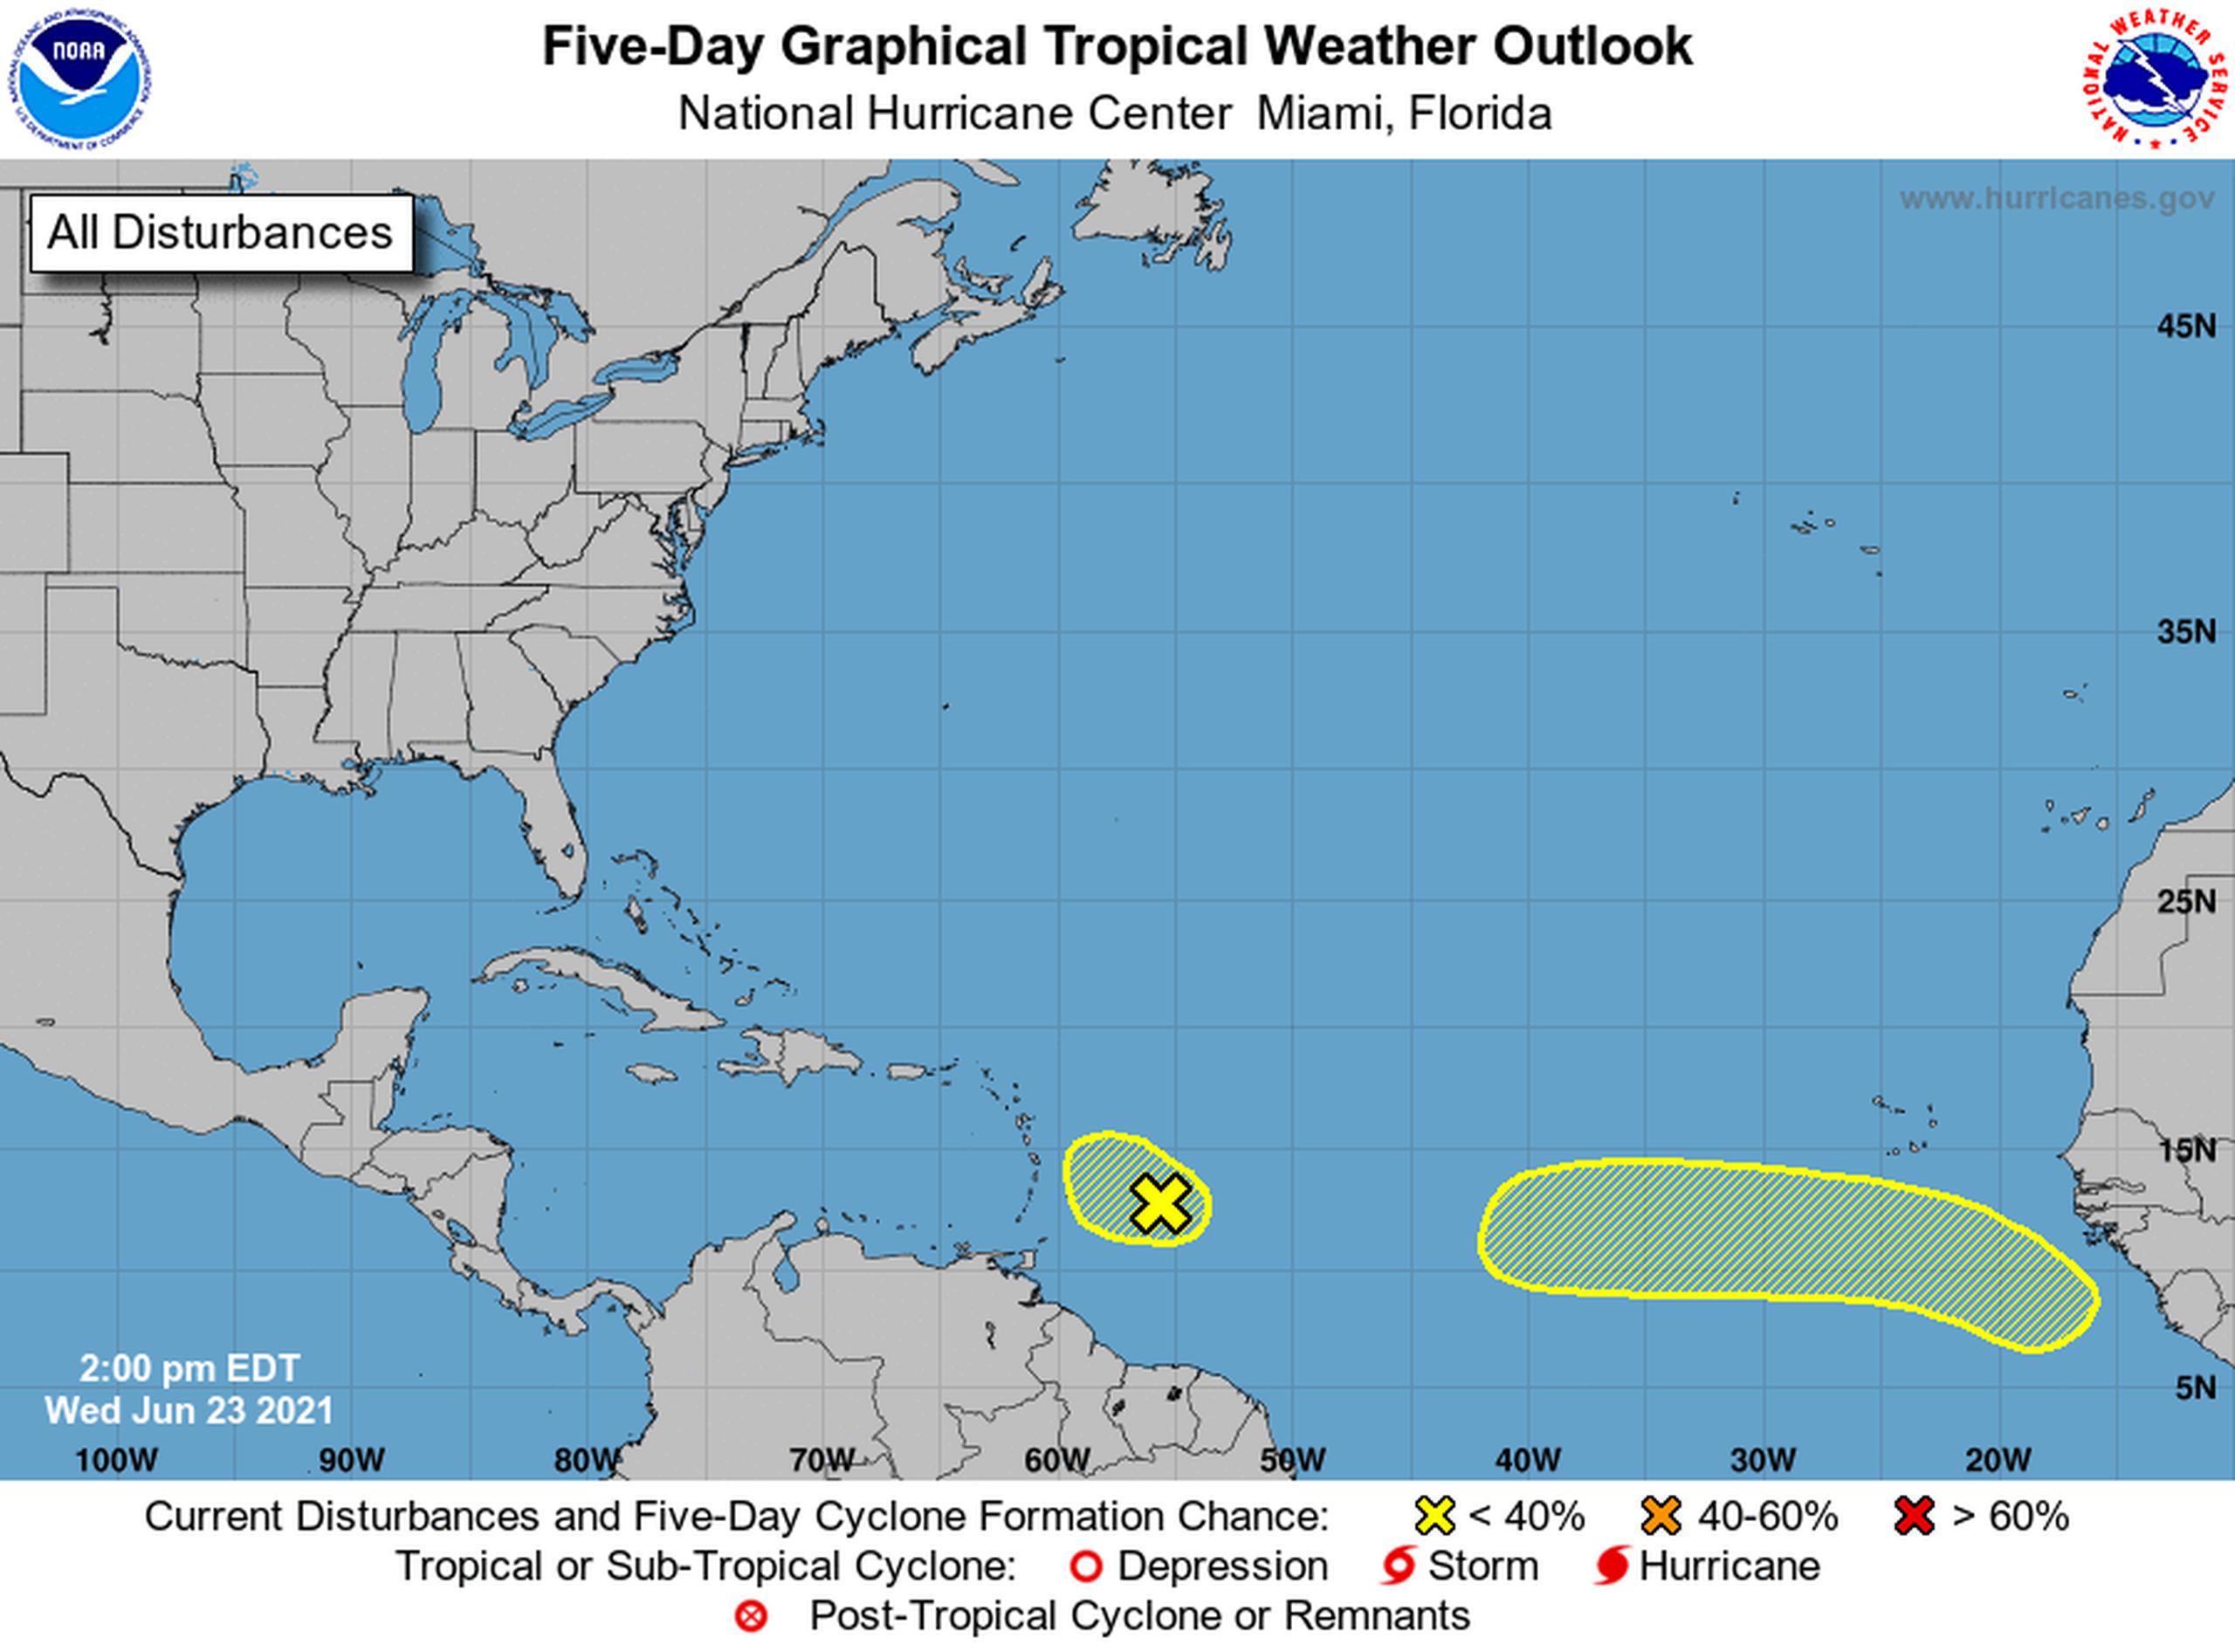 Ondas tropicales que el Centro Nacional de Huracanes monitorea en el Atlántico